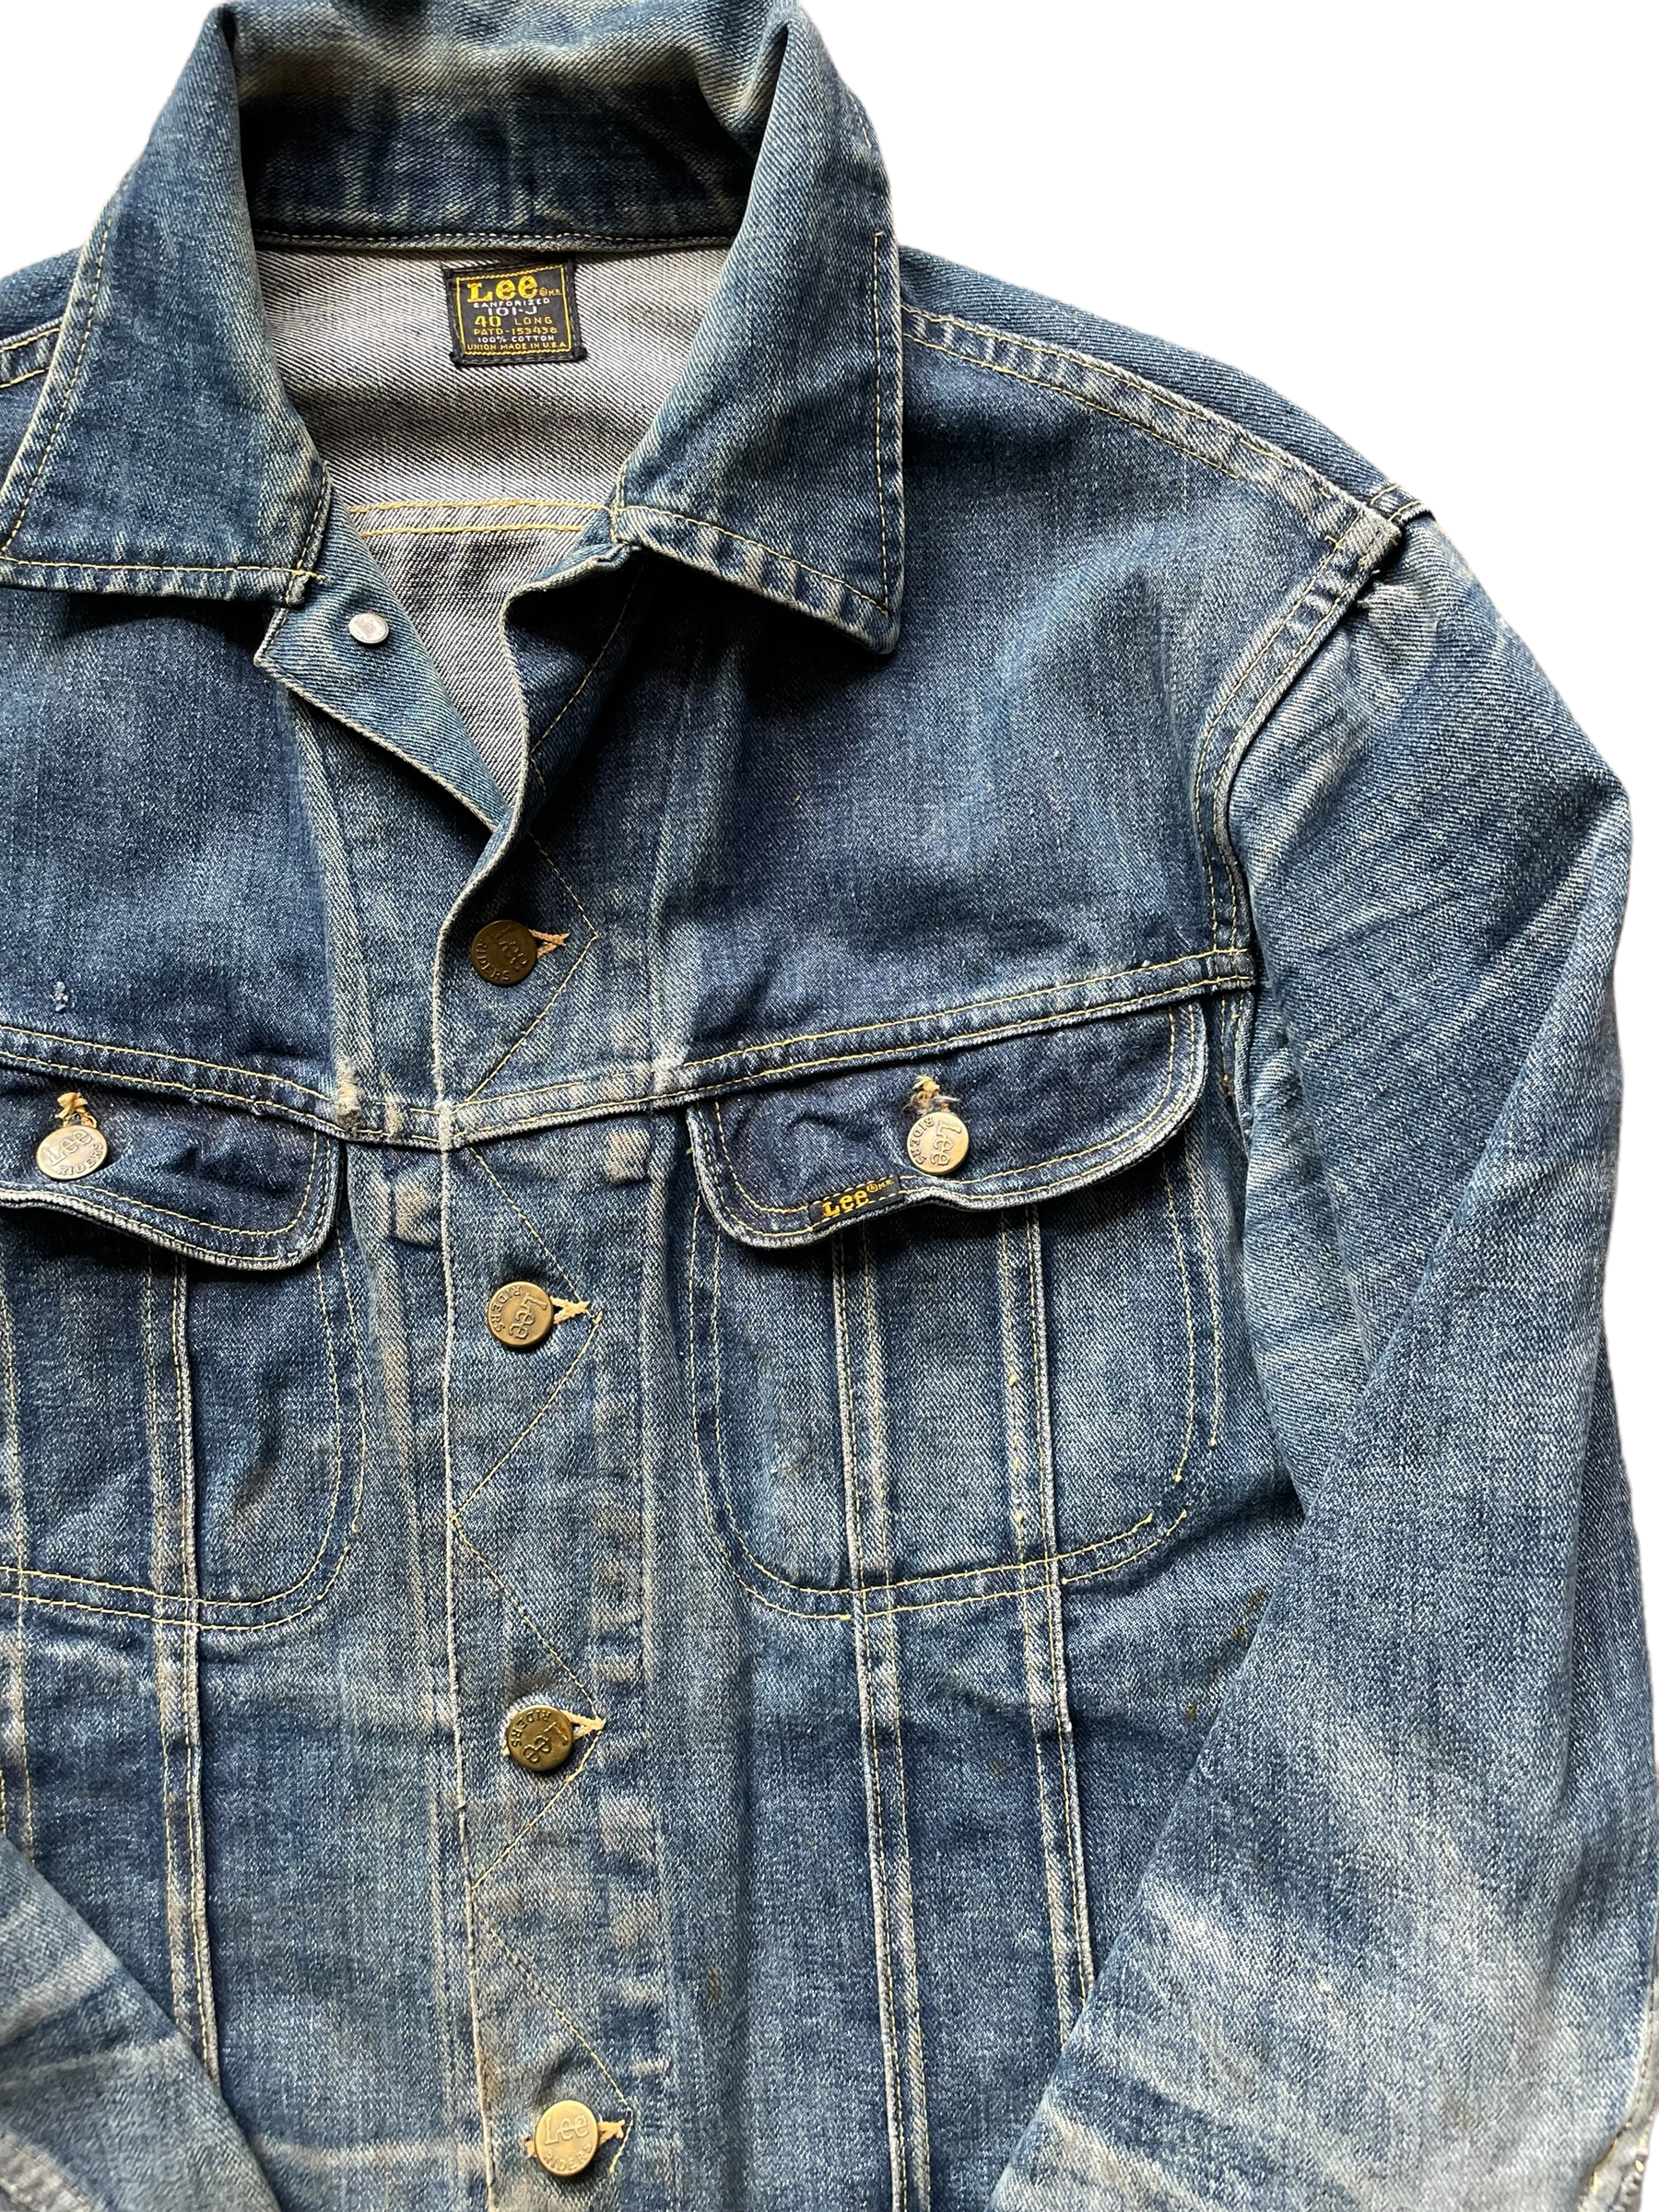 日本一掃 vintage made in USA 70s Lee jacket ce | yasnabeauty.com